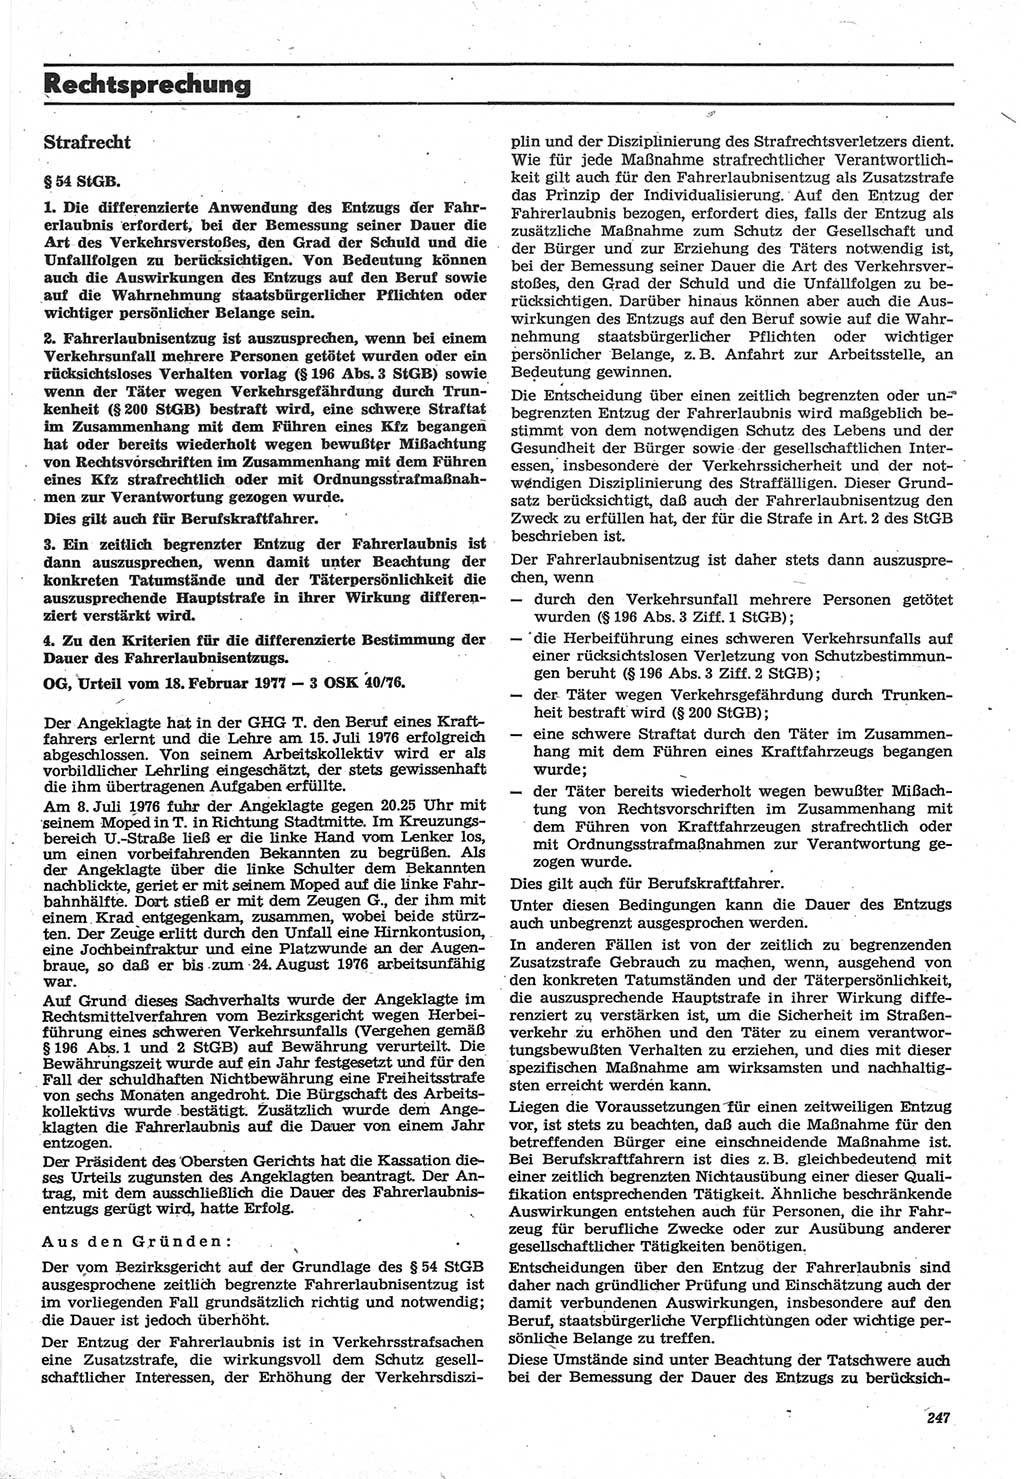 Neue Justiz (NJ), Zeitschrift für Recht und Rechtswissenschaft-Zeitschrift, sozialistisches Recht und Gesetzlichkeit, 31. Jahrgang 1977, Seite 247 (NJ DDR 1977, S. 247)